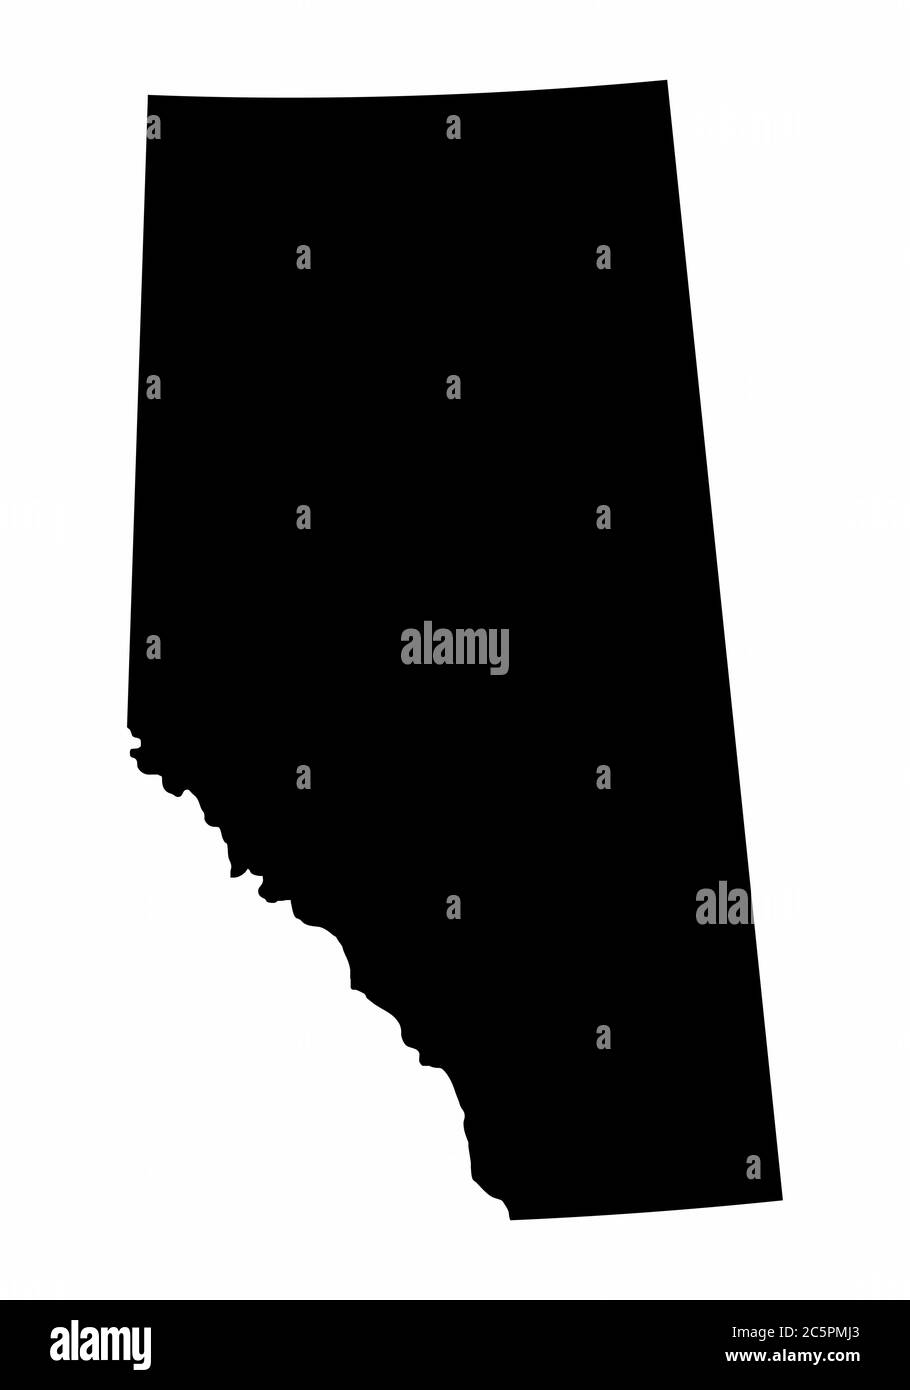 Mappa della silhouette scura della provincia di Alberta Illustrazione Vettoriale